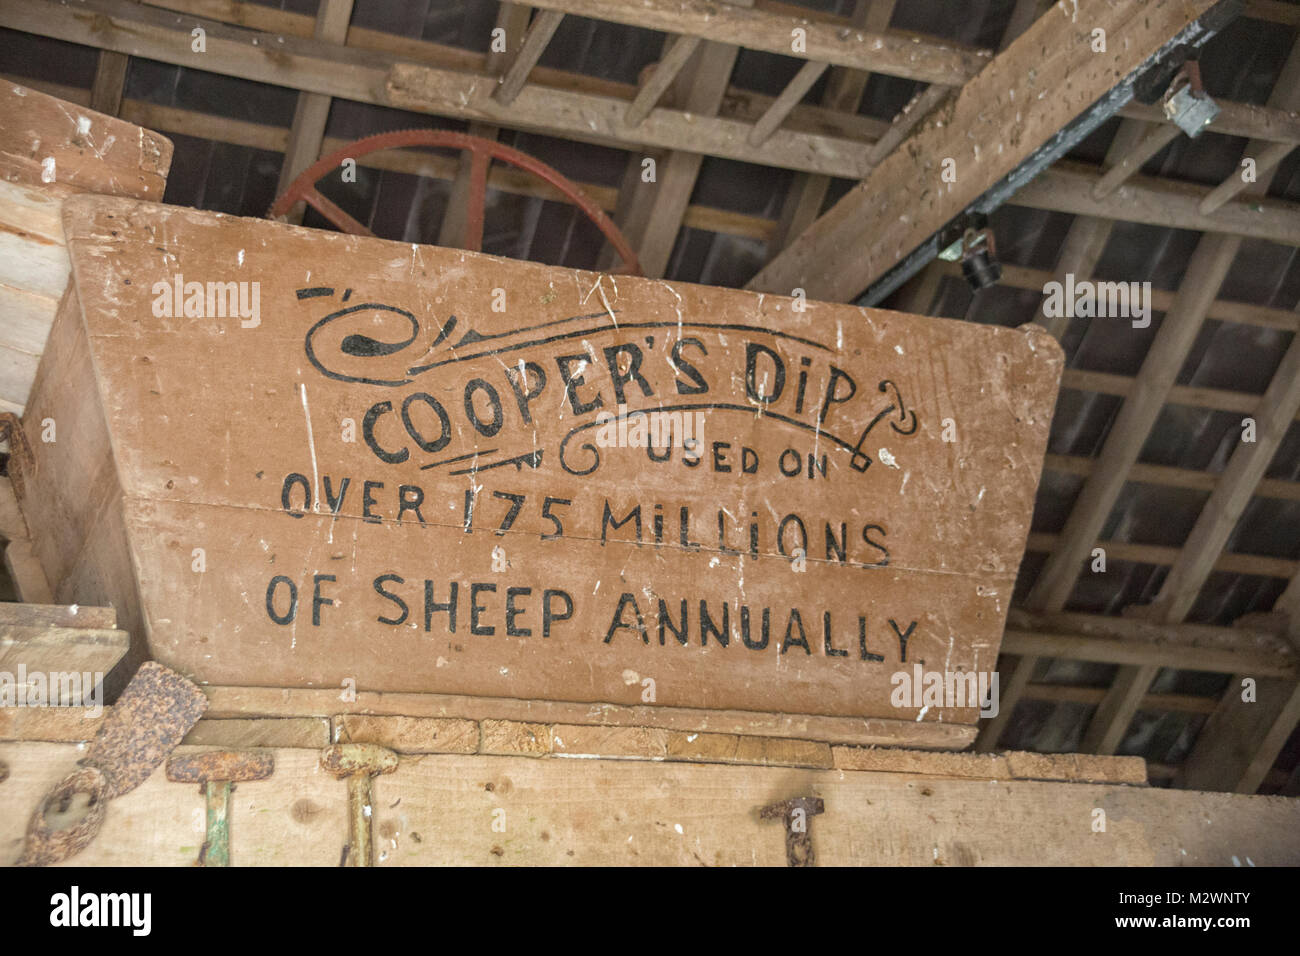 Cooper's dip è uno dei più antichi cali di pecora realizzati in Inghilterra nel 1852. Foto Stock